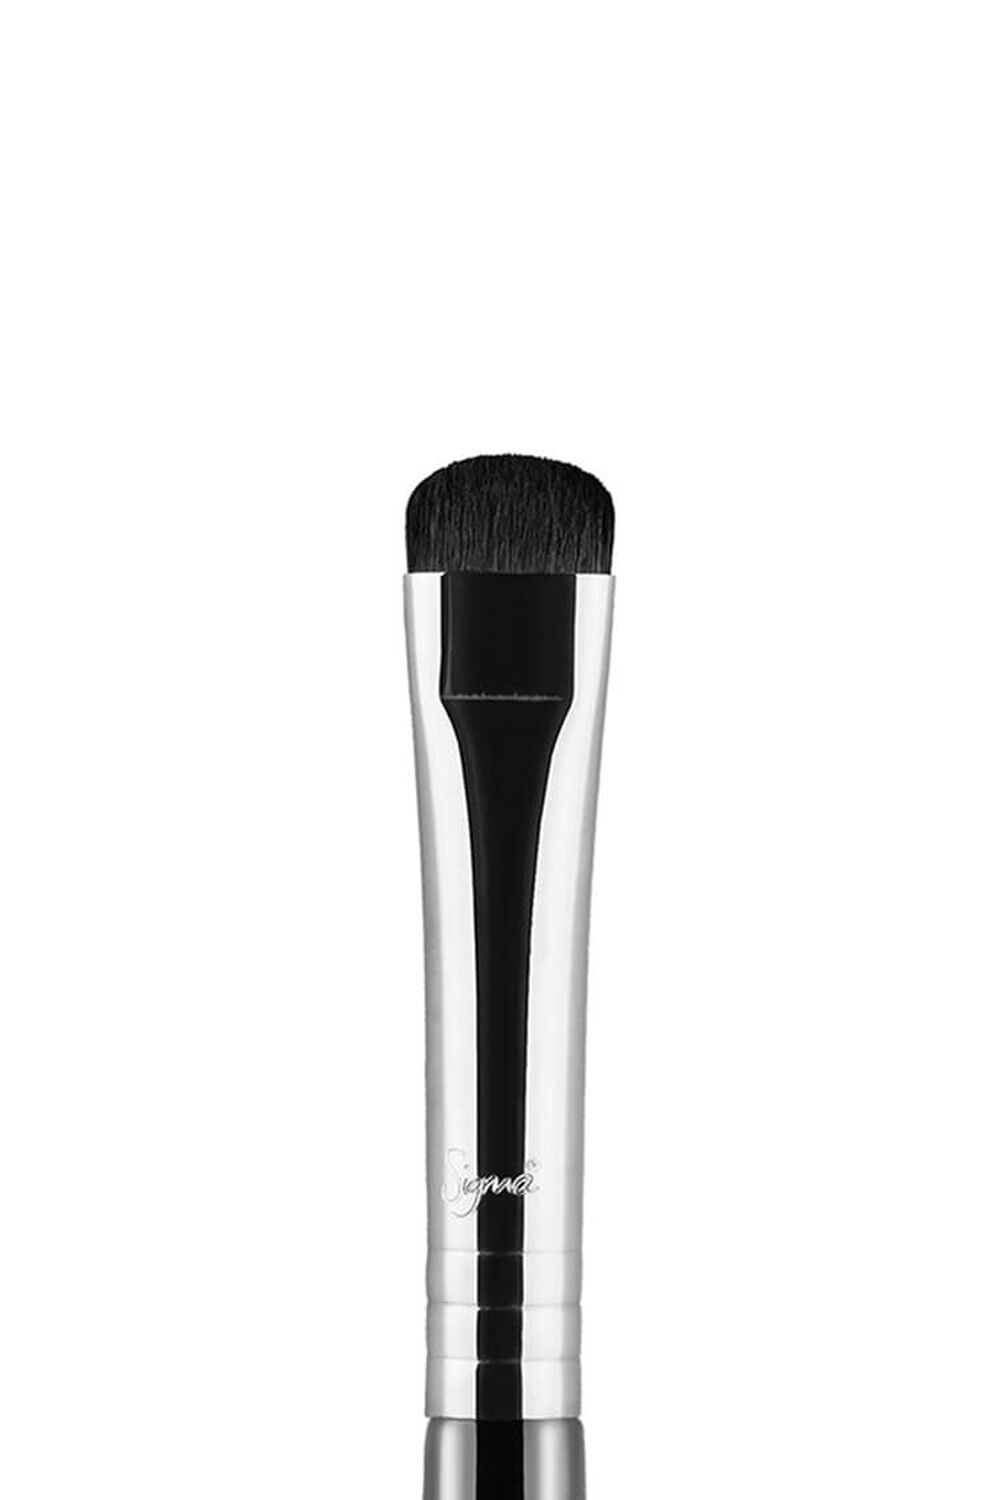 Sigma Beauty E20 – Short Shader Brush, image 2